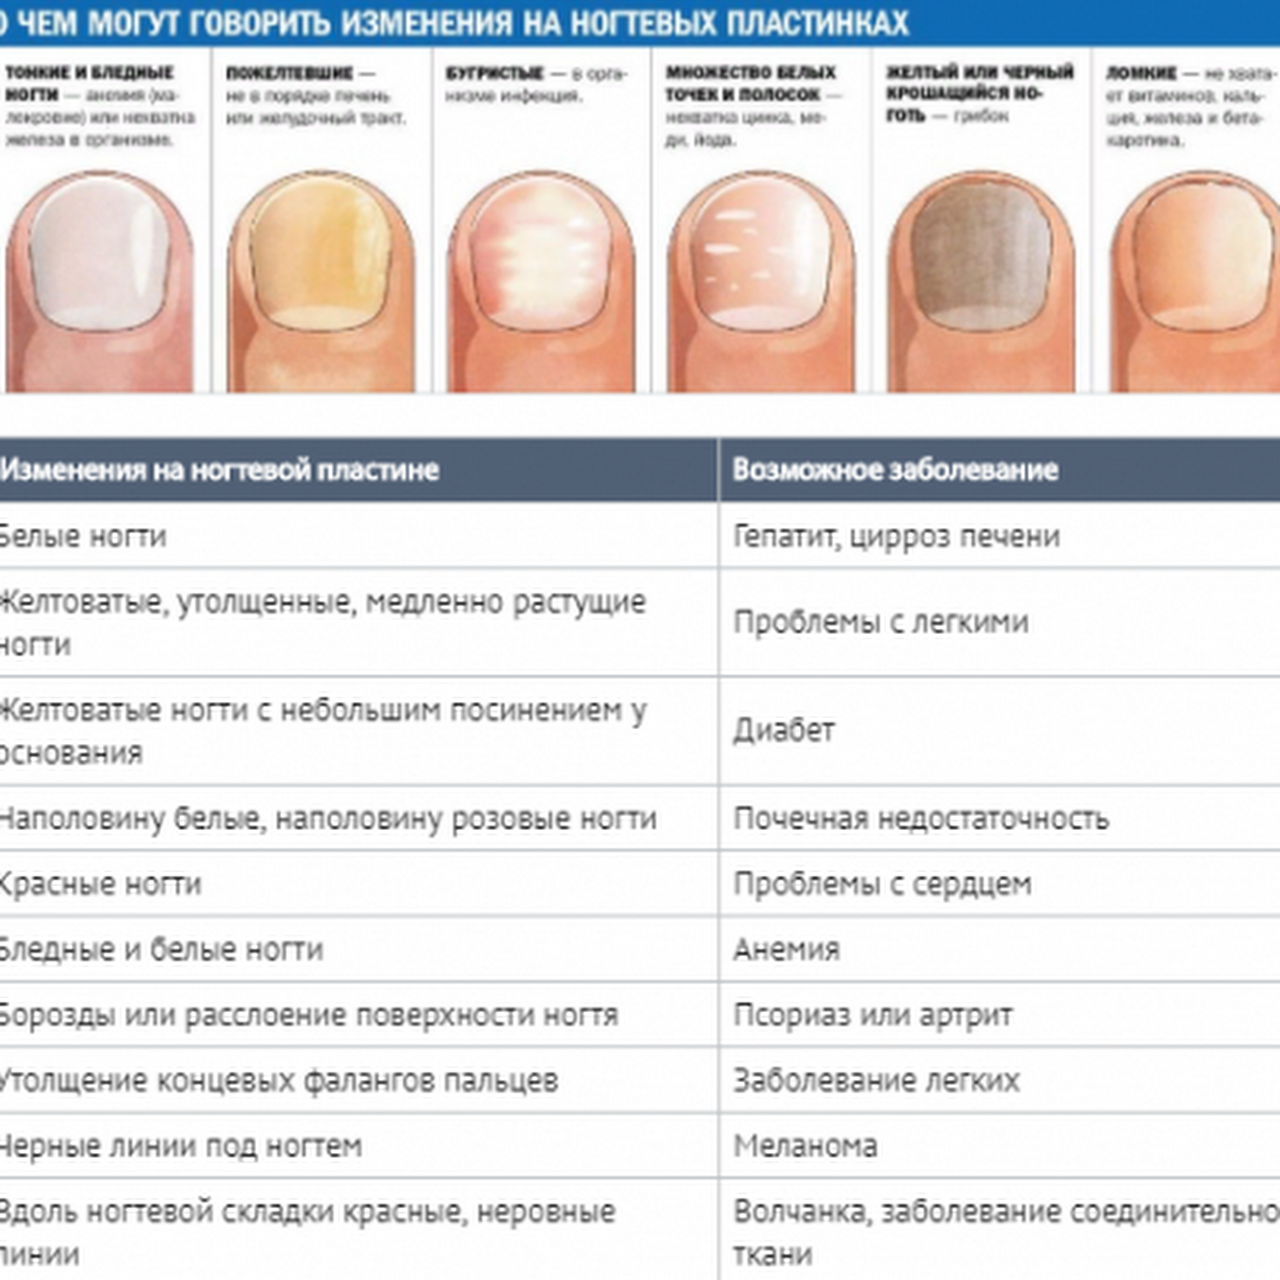 Ногтевые пластины ребристые причина. Определение болезни по состоянию ногтей. Заболевания ногтей на руках таблица описание. Как определить по цвету ногтей заболевание. Выявление болезни по ногтям.